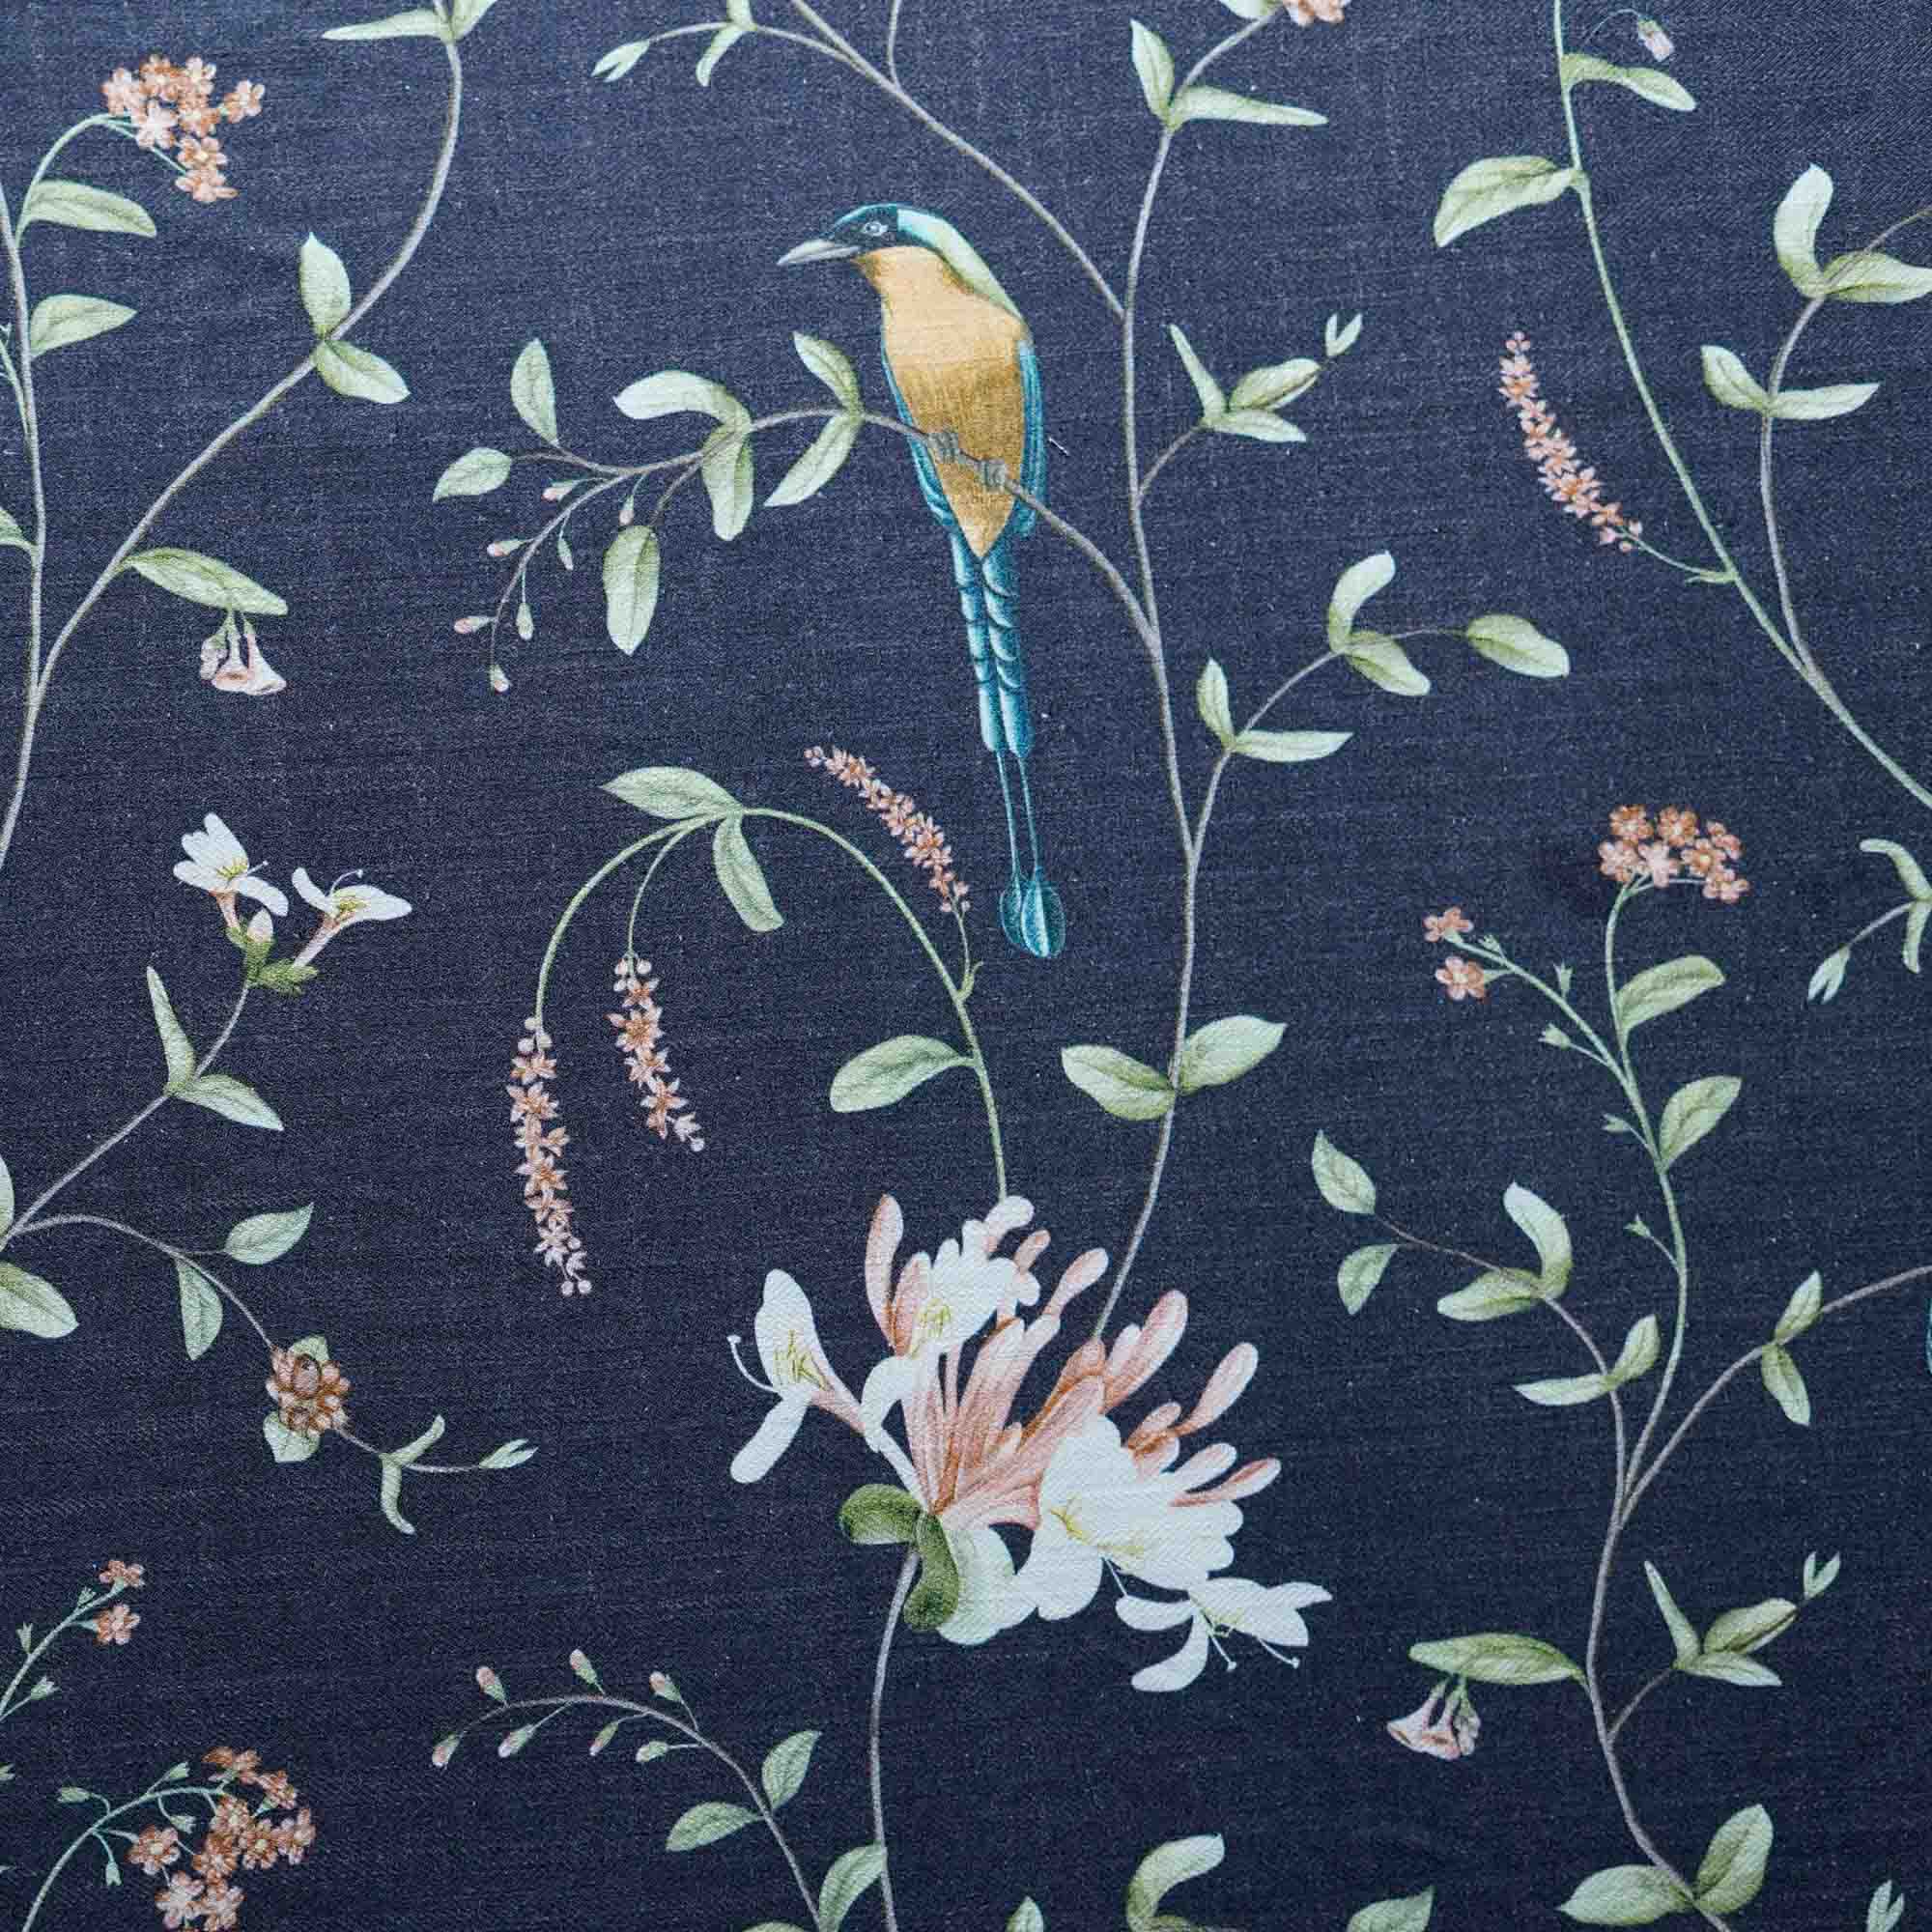 A Persian Garden Moonlit Cotton Linen Blend Fabric